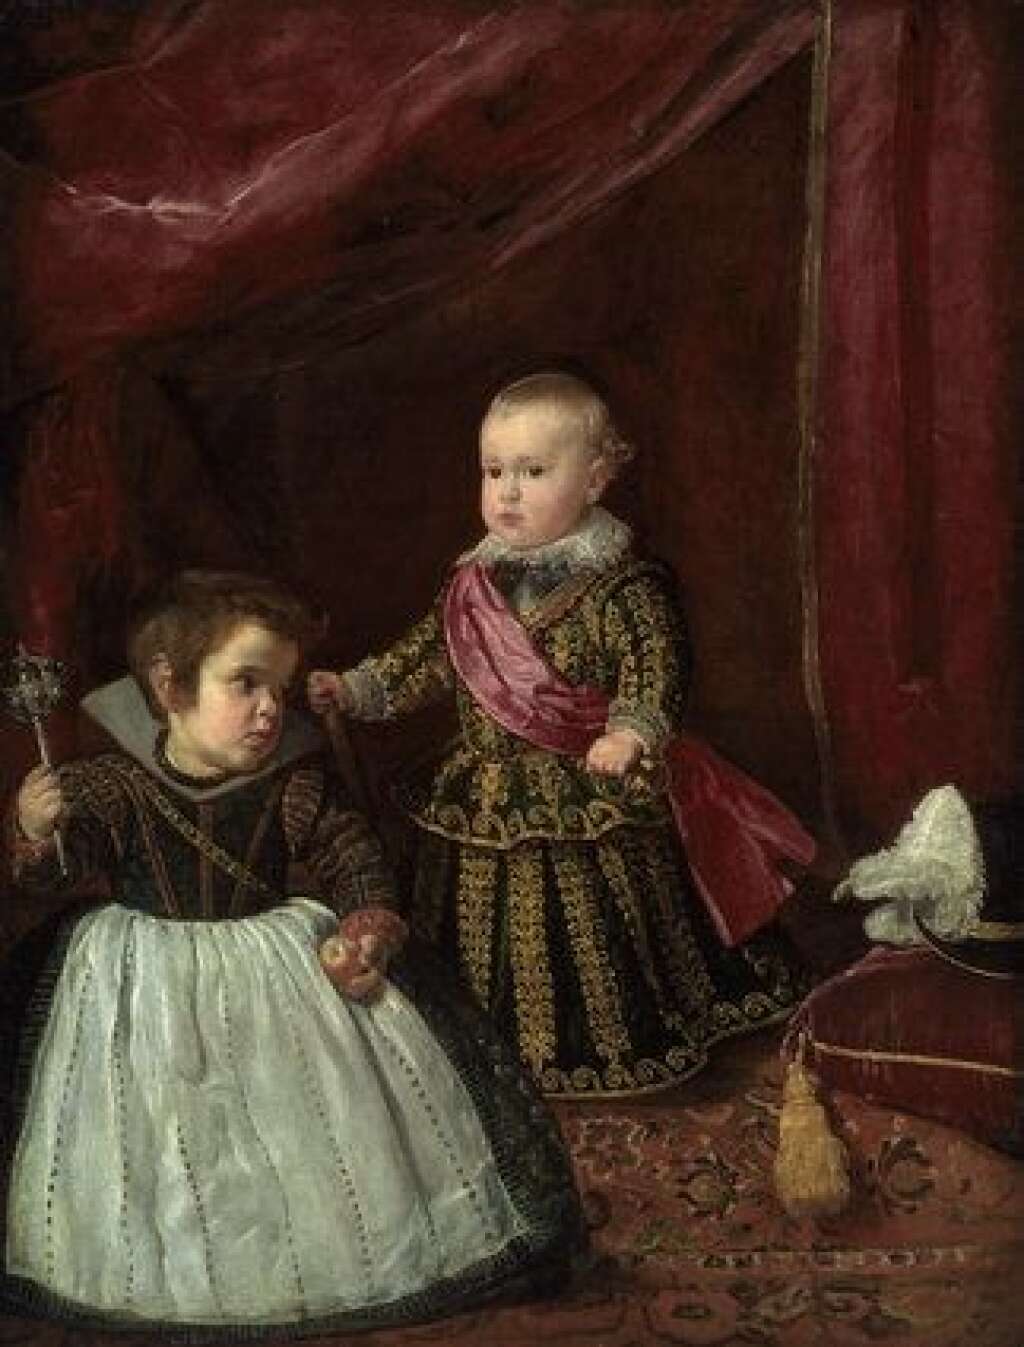 Velázquez - <br>Diego Velázquez (1599- 1660) est le plus célèbre des peintres de l’âge d’or espagnol. Une rétrospective au Grand Palais met son œuvre en dialogue avec de nombreuses toiles d’artistes et s'interroge également sur le cheminement qui mènera le peintre du naturalisme au caravagisme. L'occasion de (re)découvrir des chefs d'œuvre comme "La Vénus au miroir" ou "Le Portrait d’Innocent X".<br><br>  <em>Diego Velazquez, Balthasar Carlos et son nain, vers 1631, 128 x 102 cm, huile sur toile, Museum of Fine Arts, Boston</em><br><br> <strong><a href="http://www.grandpalais.fr/fr/evenement/velazquez" target="_blank">L'exposition a lieu du 25 mars au 13 juillet 2015 au Grand Palais</a></strong>